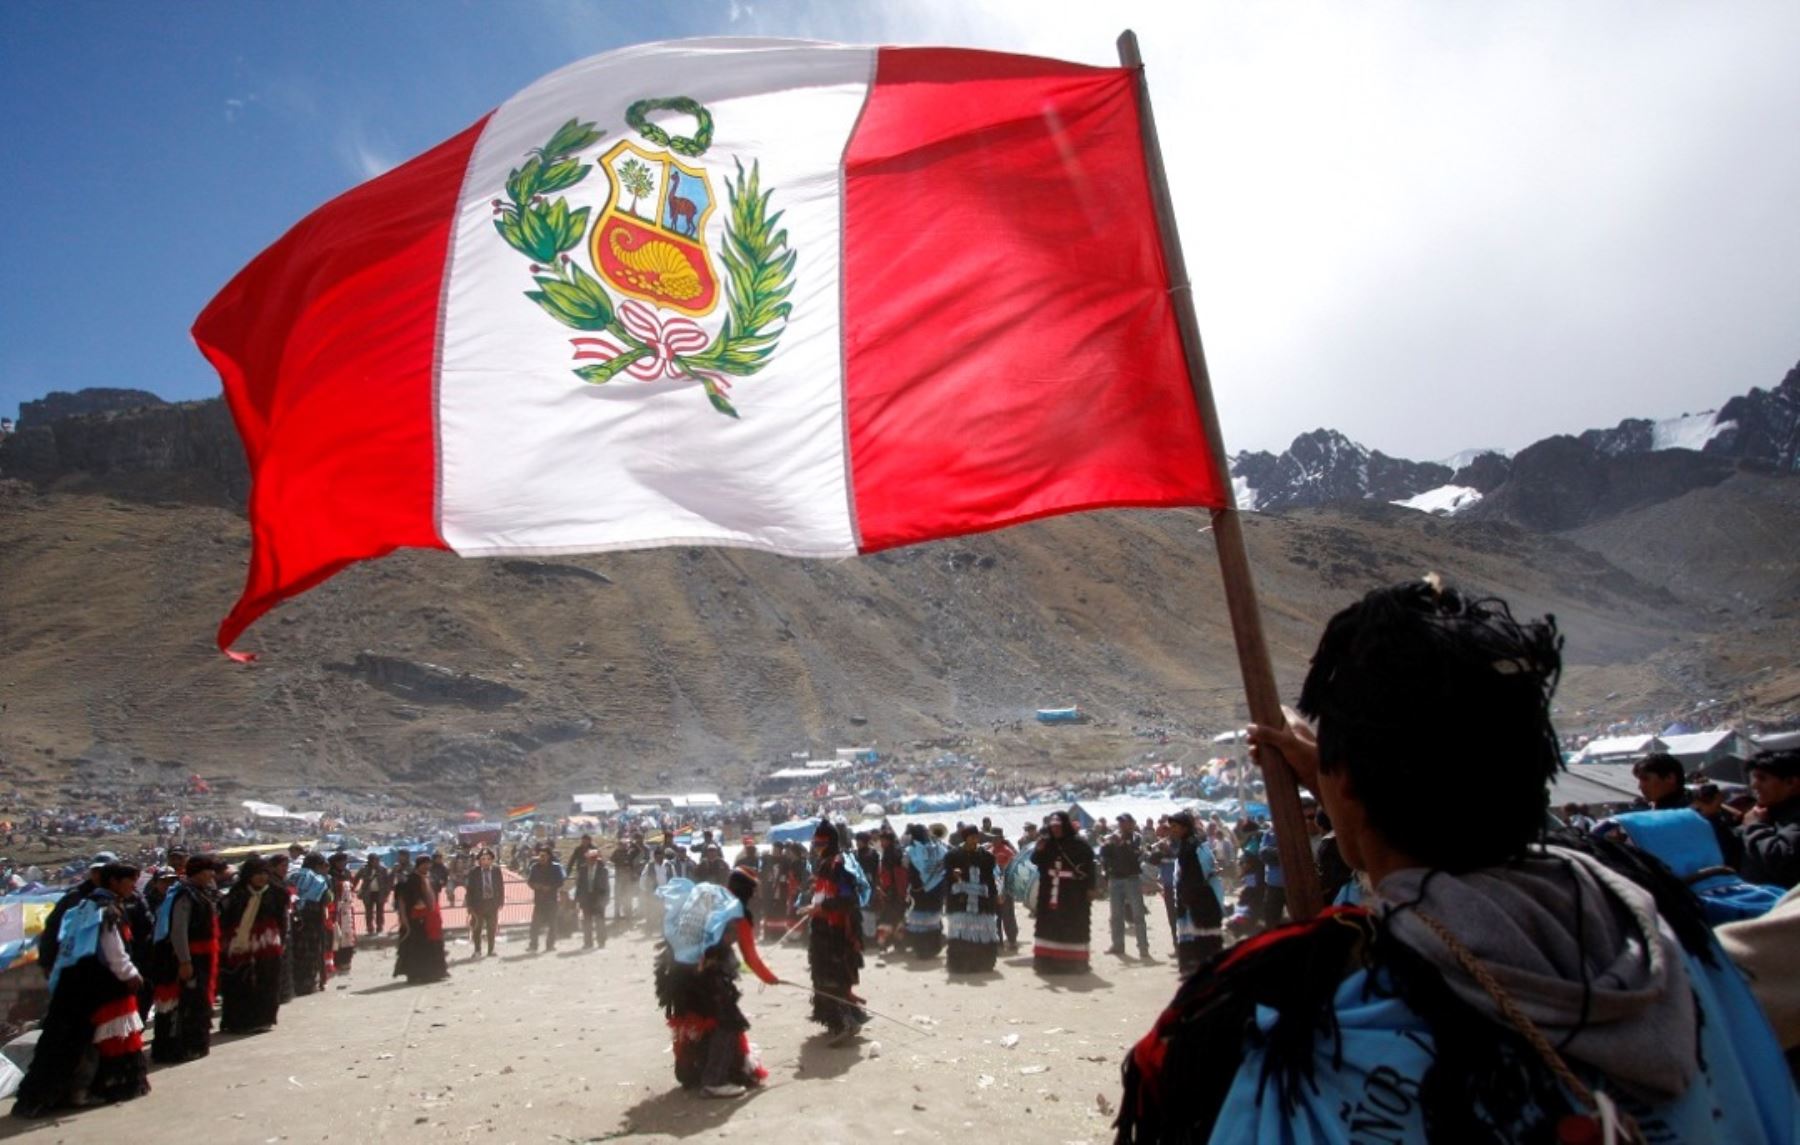 Peregrinación al Señor de Qoyllur Riti, en Ocongate, Cusco, se desarrollará entre el 19 al 25 de mayo. ANDINA/Percy Hurtado